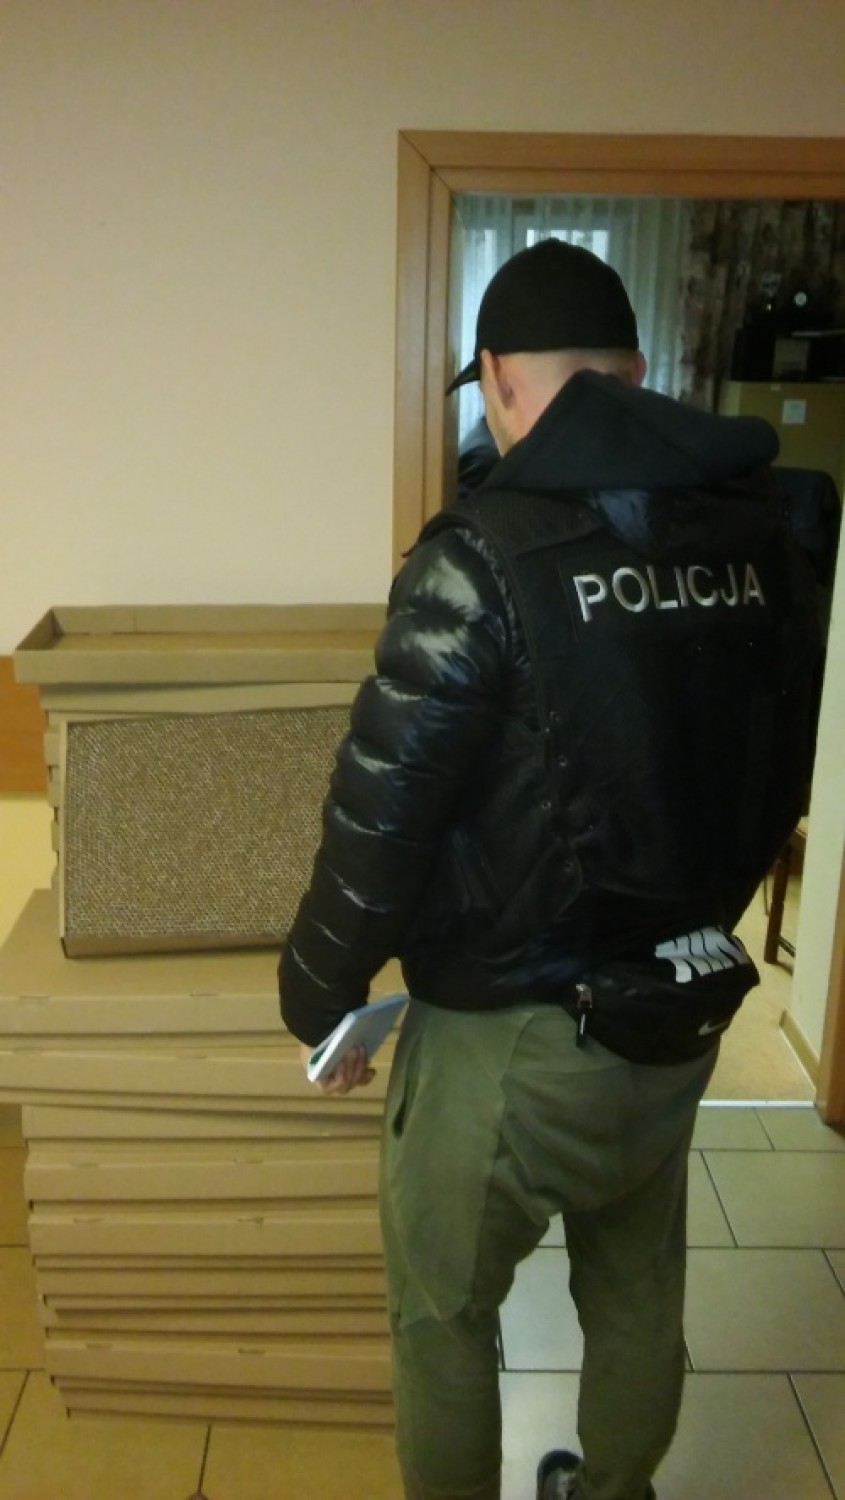 Policja w Kaliszu przejęła nielegalne papierosy